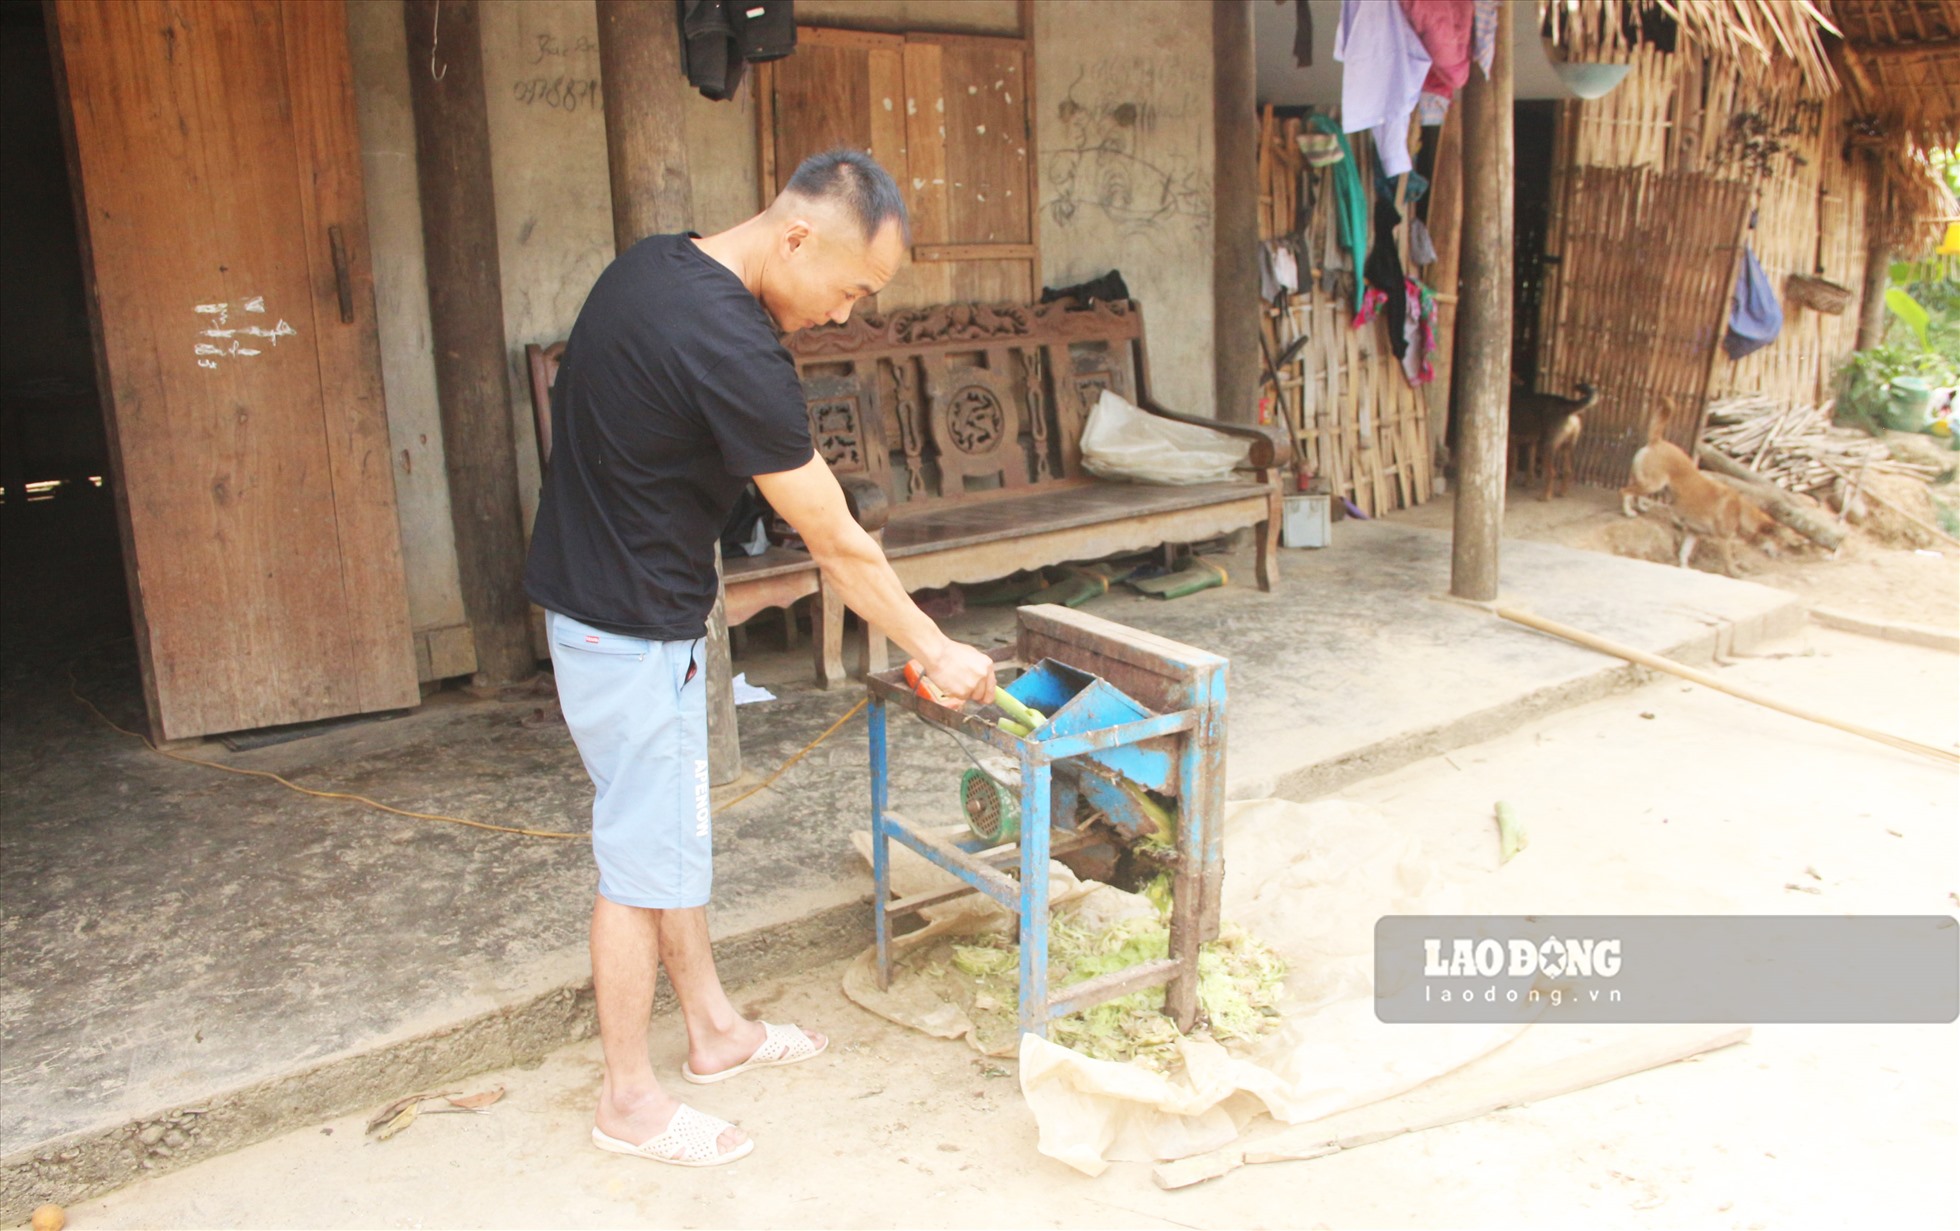 Máy móc nông nghiệp ở các thôn bản khó khăn của xã Hùng Lợi đã có thể dùng được nhờ dòng điện ổn định.